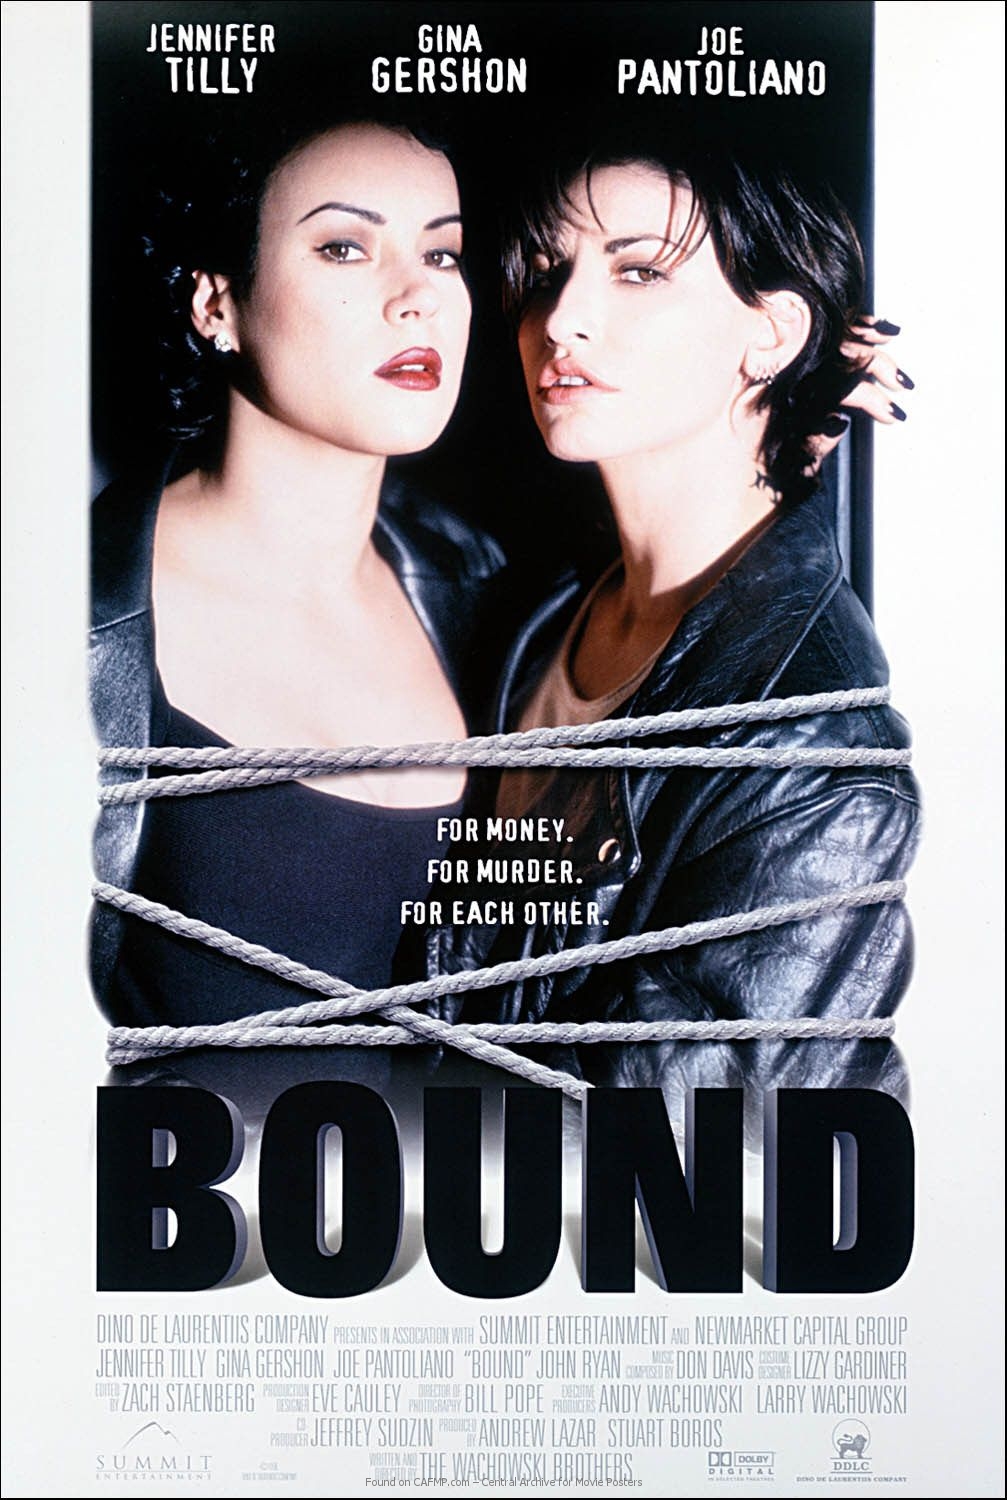 bound movie 2015 watch online